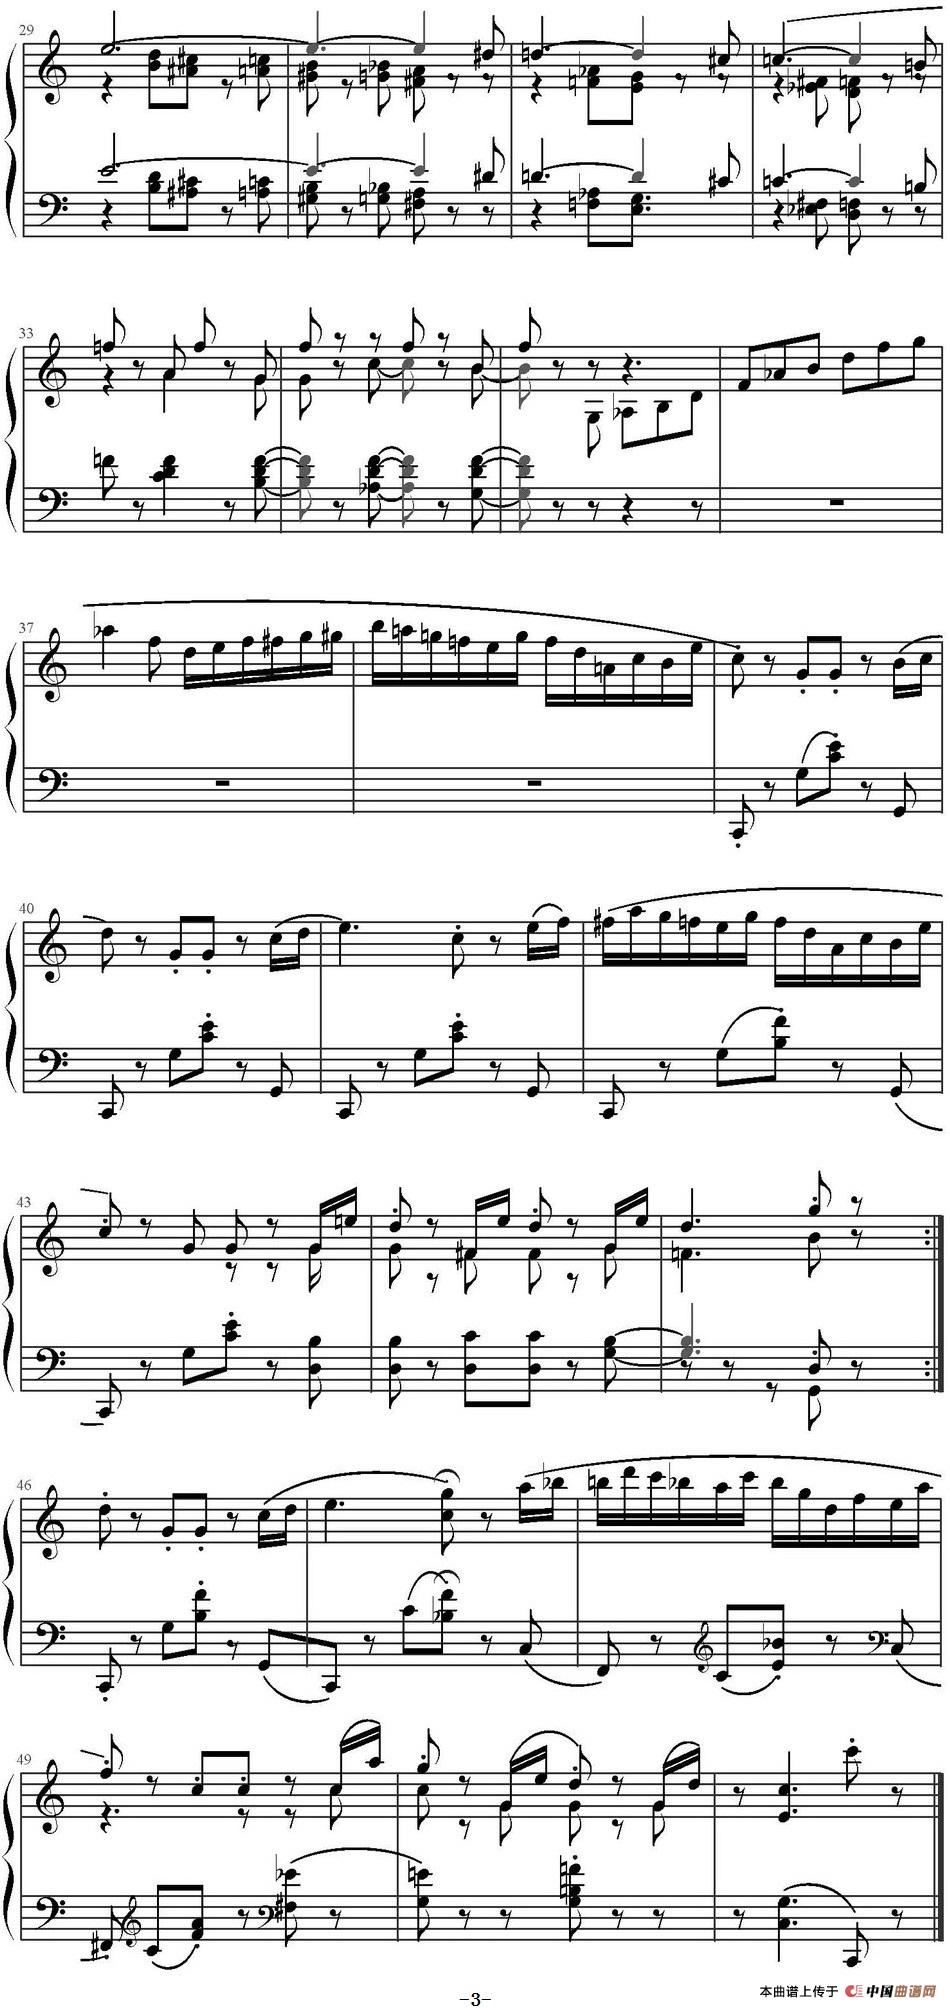 《小精灵舞曲》钢琴曲谱图分享